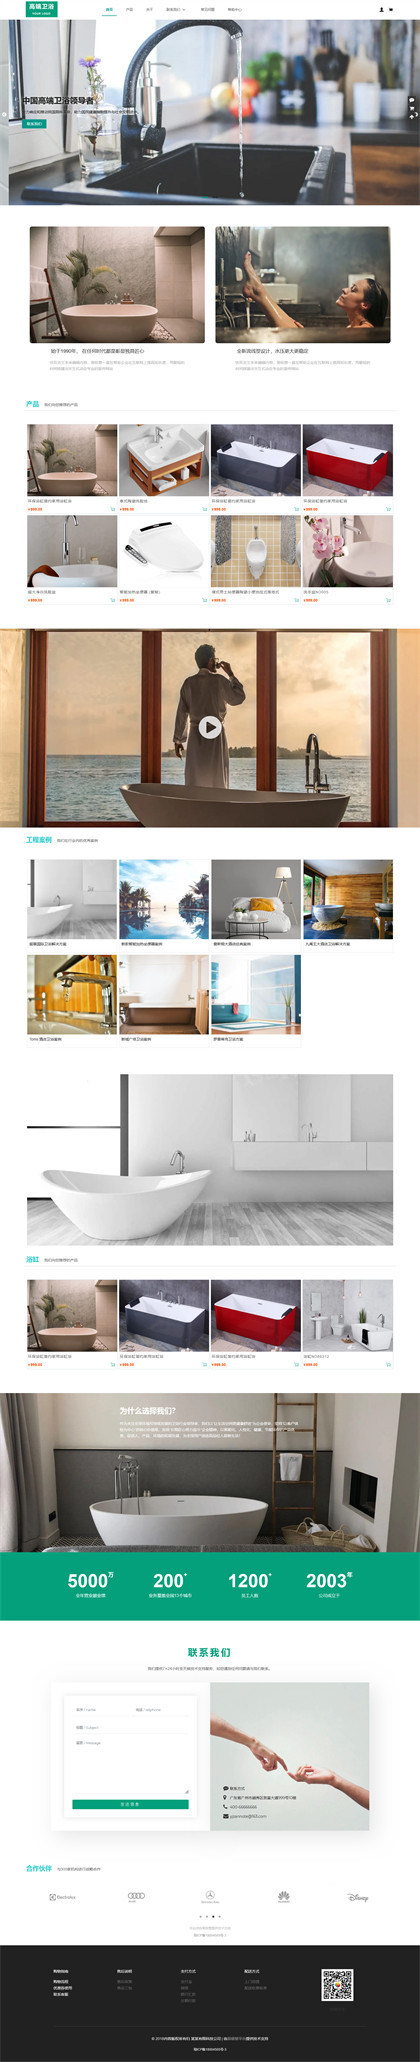 五金卫浴-厨卫用品-卫浴用品-建材用品-浴缸-洗手盆商城网站模板网站模板图片